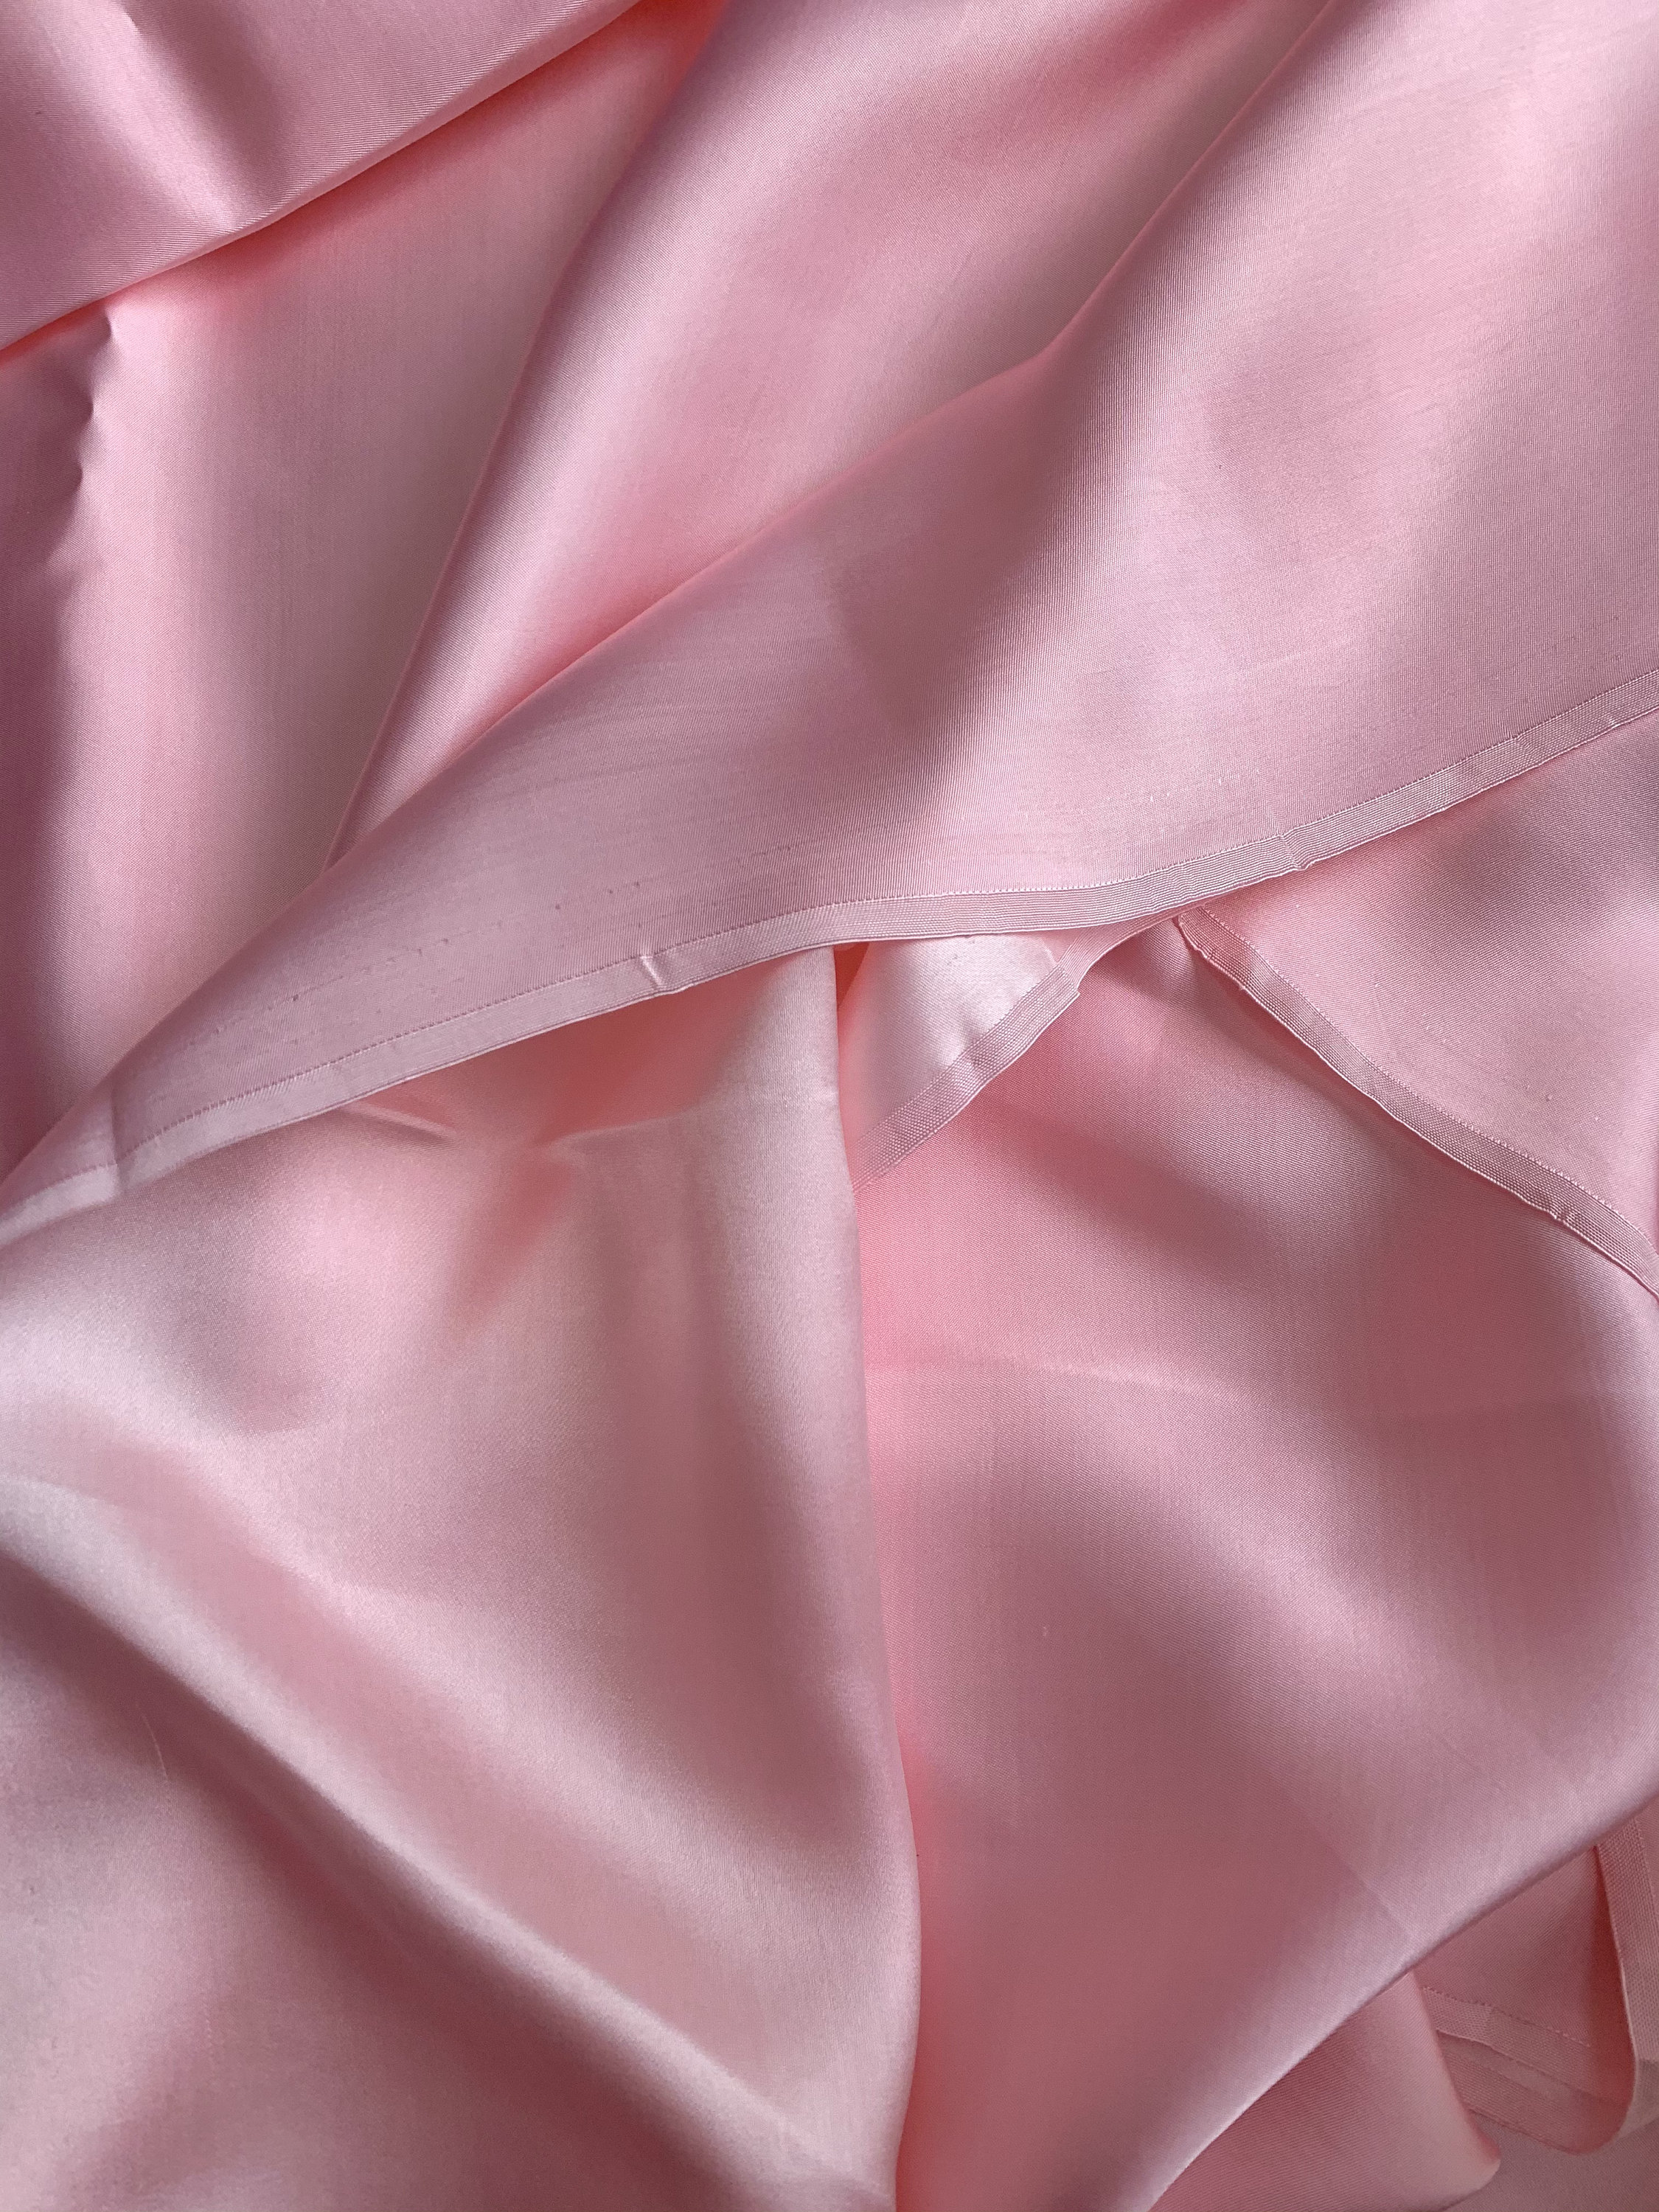 Vải Lụa Tơ Tằm Palacesik satin màu hồng may áo dài #mềm#mượt#nhẹ#thoáng, dệt thủ công, khổ rộng 90cm